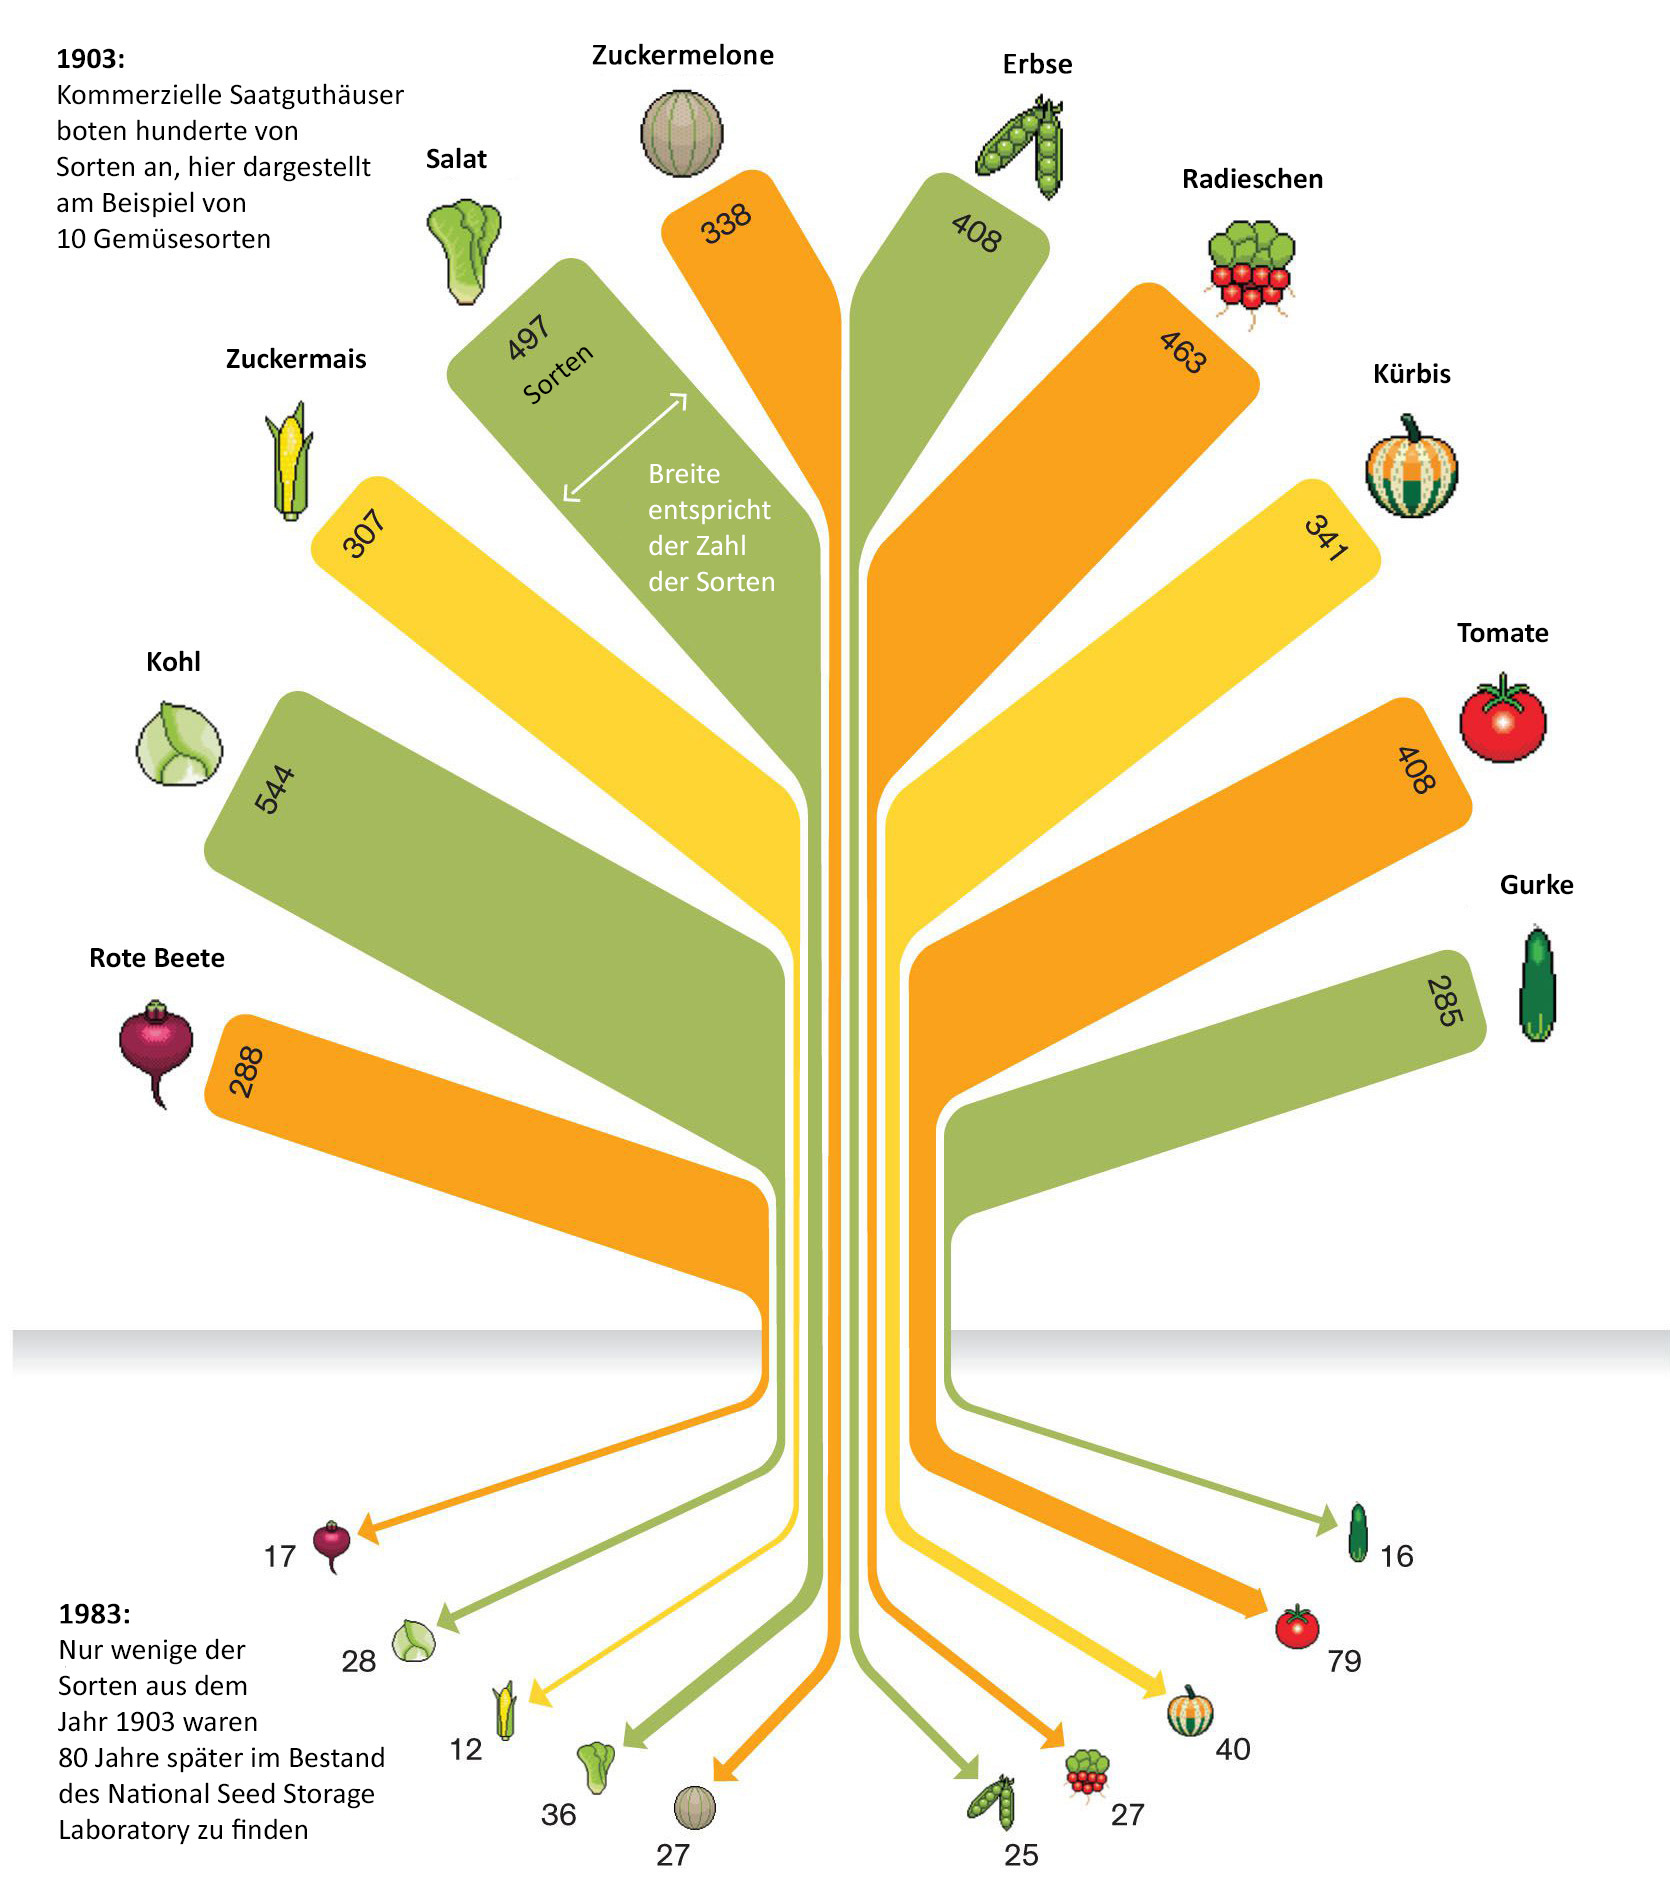 Abnehmende Biodiversität bei 10 Gemüsesorten in den USA (1903-1983)